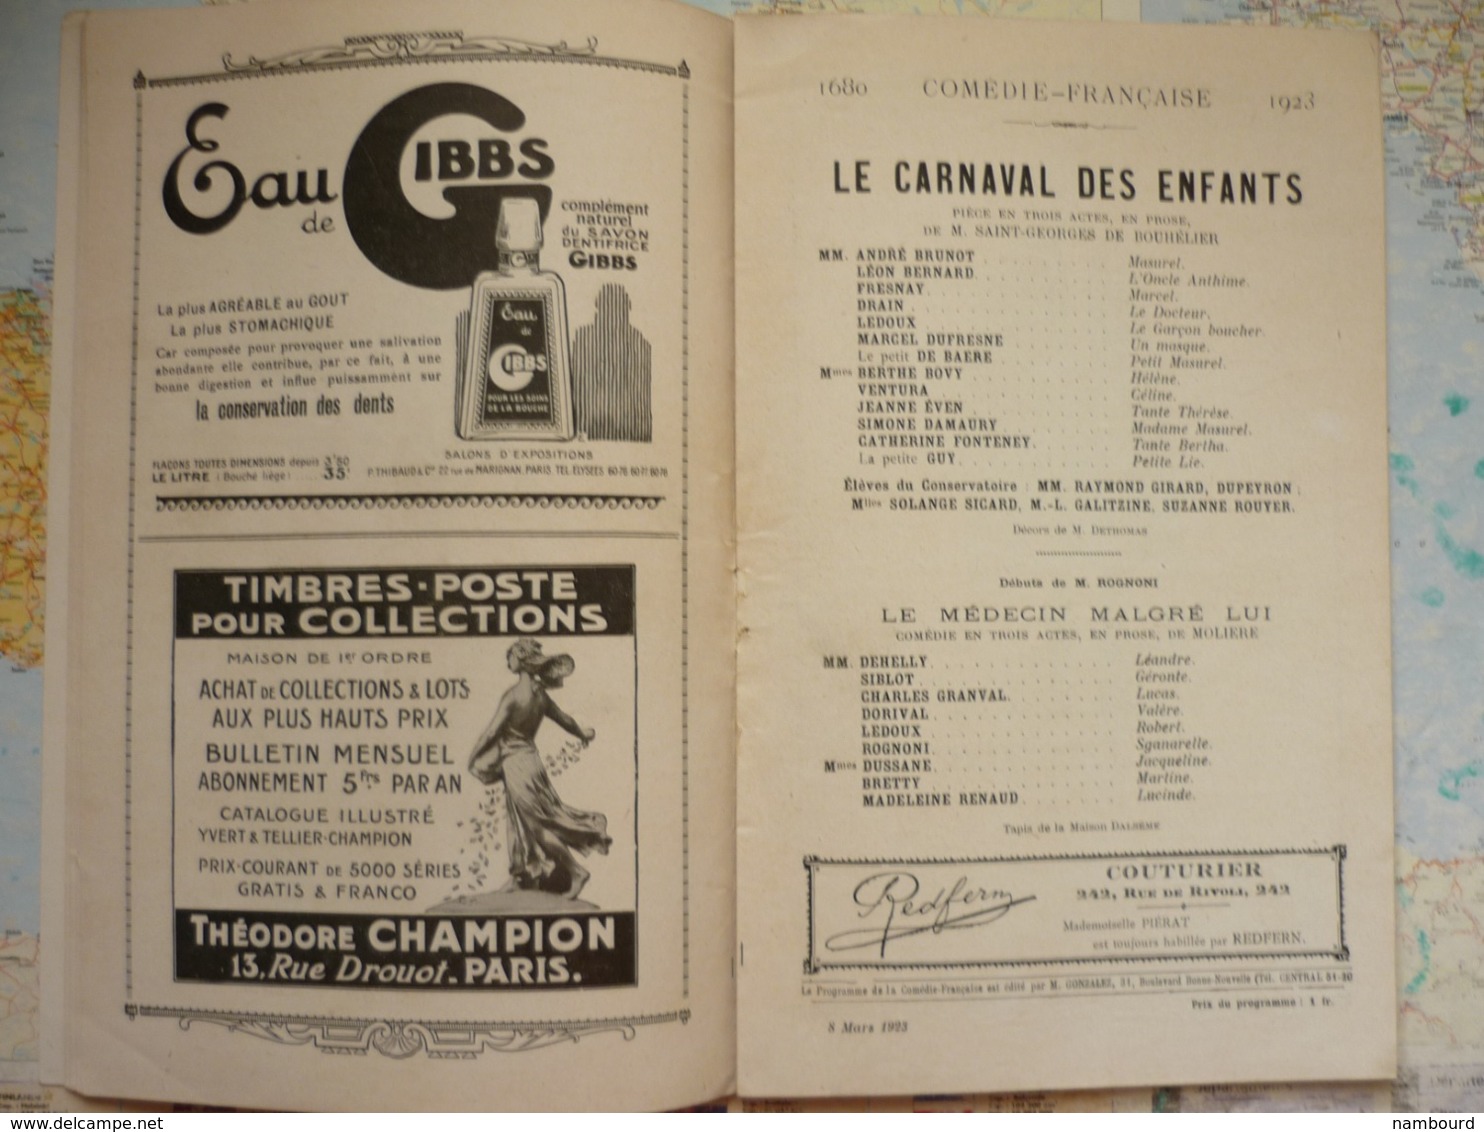 Le carnaval des enfants de M.Saint-Georges de Bouhélier / Le médecin malgré lui de Molière 8 Mars 1923 Comédie Française